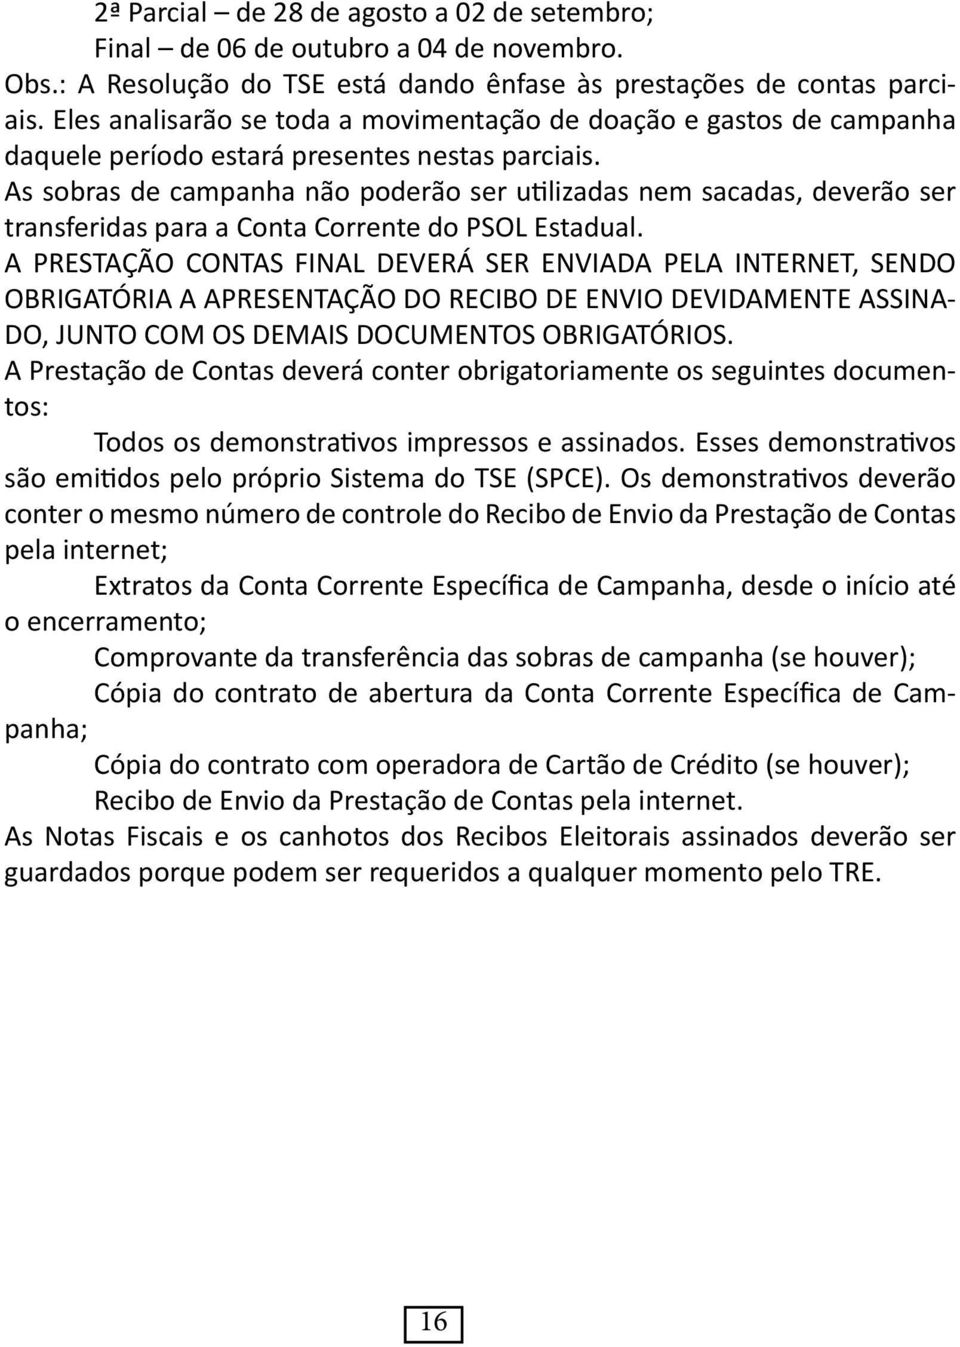 As sobras de campanha não poderão ser utilizadas nem sacadas, deverão ser transferidas para a Conta Corrente do PSOL Estadual.